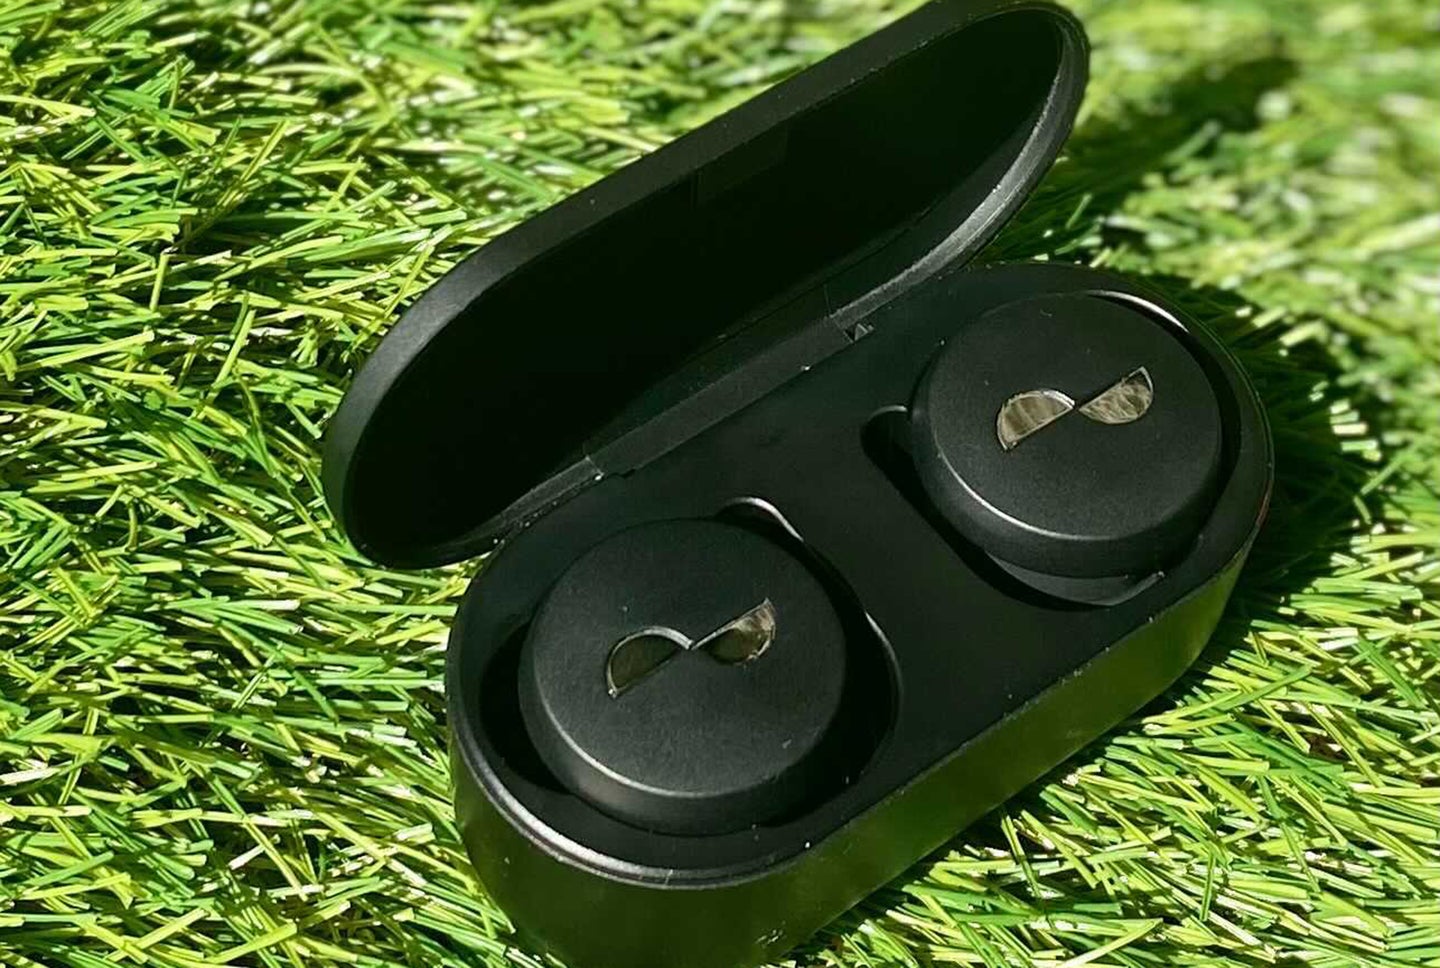 NuraTrue earbuds in case on grass